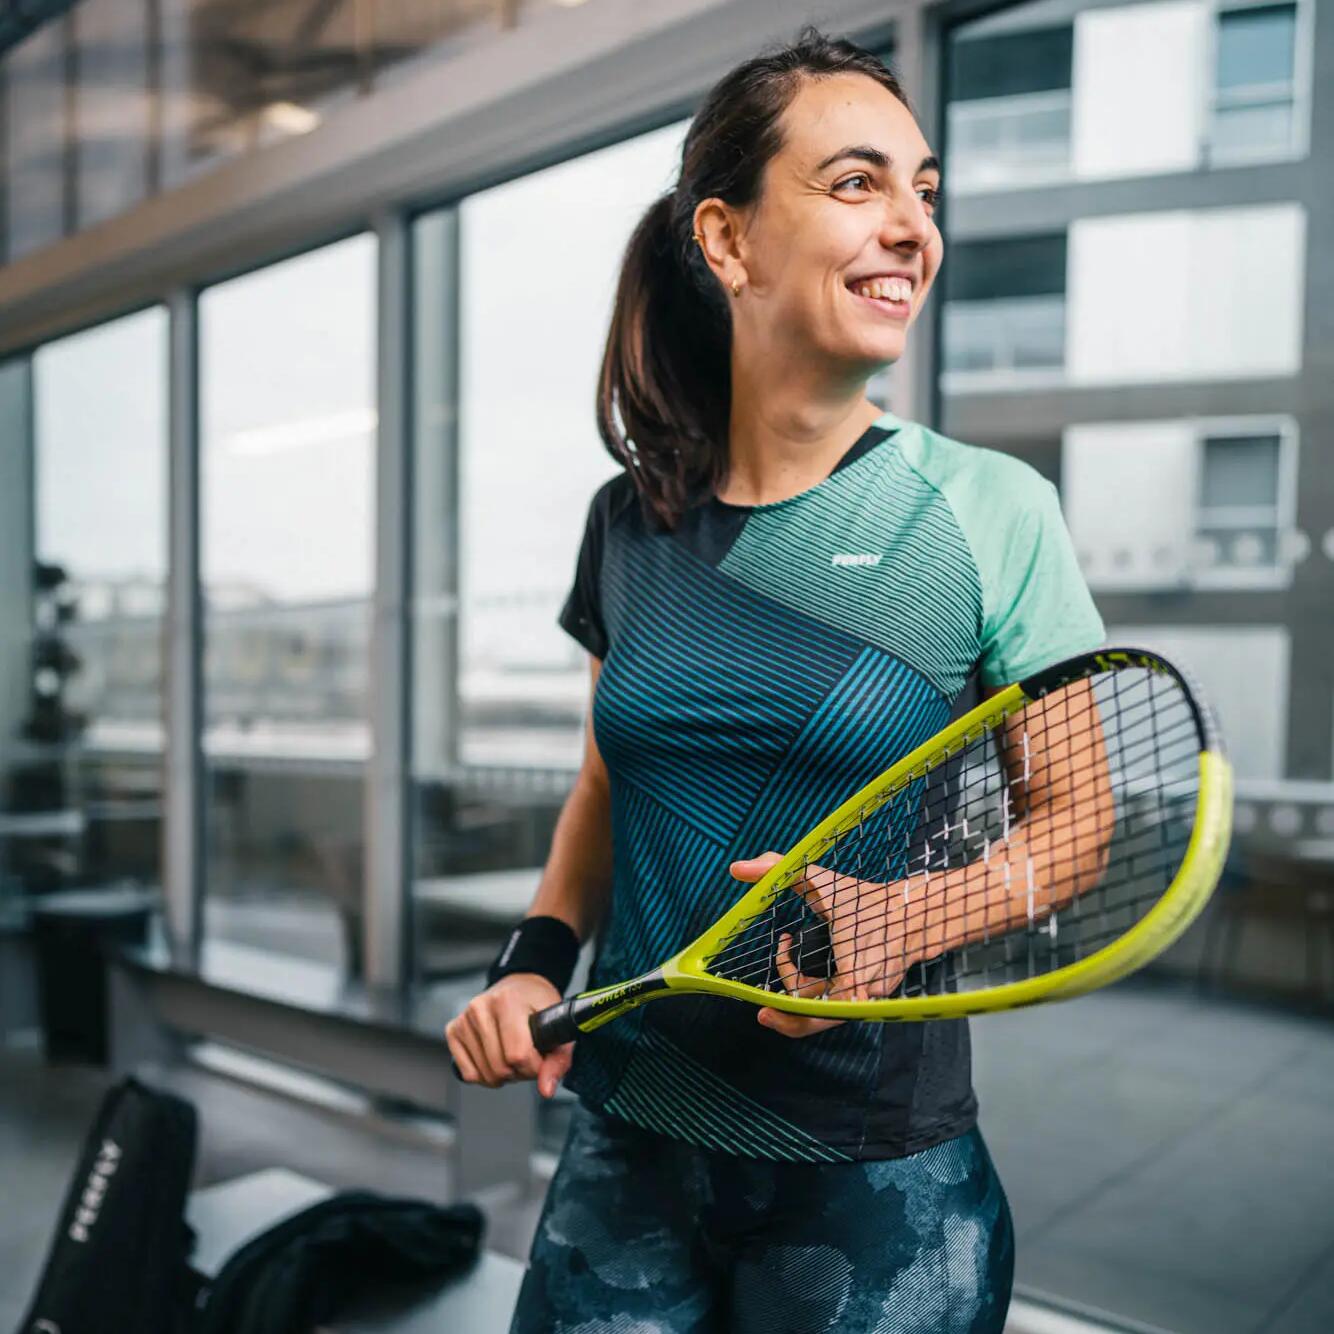 Uśmiechnięta kobieta w odzieży do squasha trzymająca rakietę do squasha